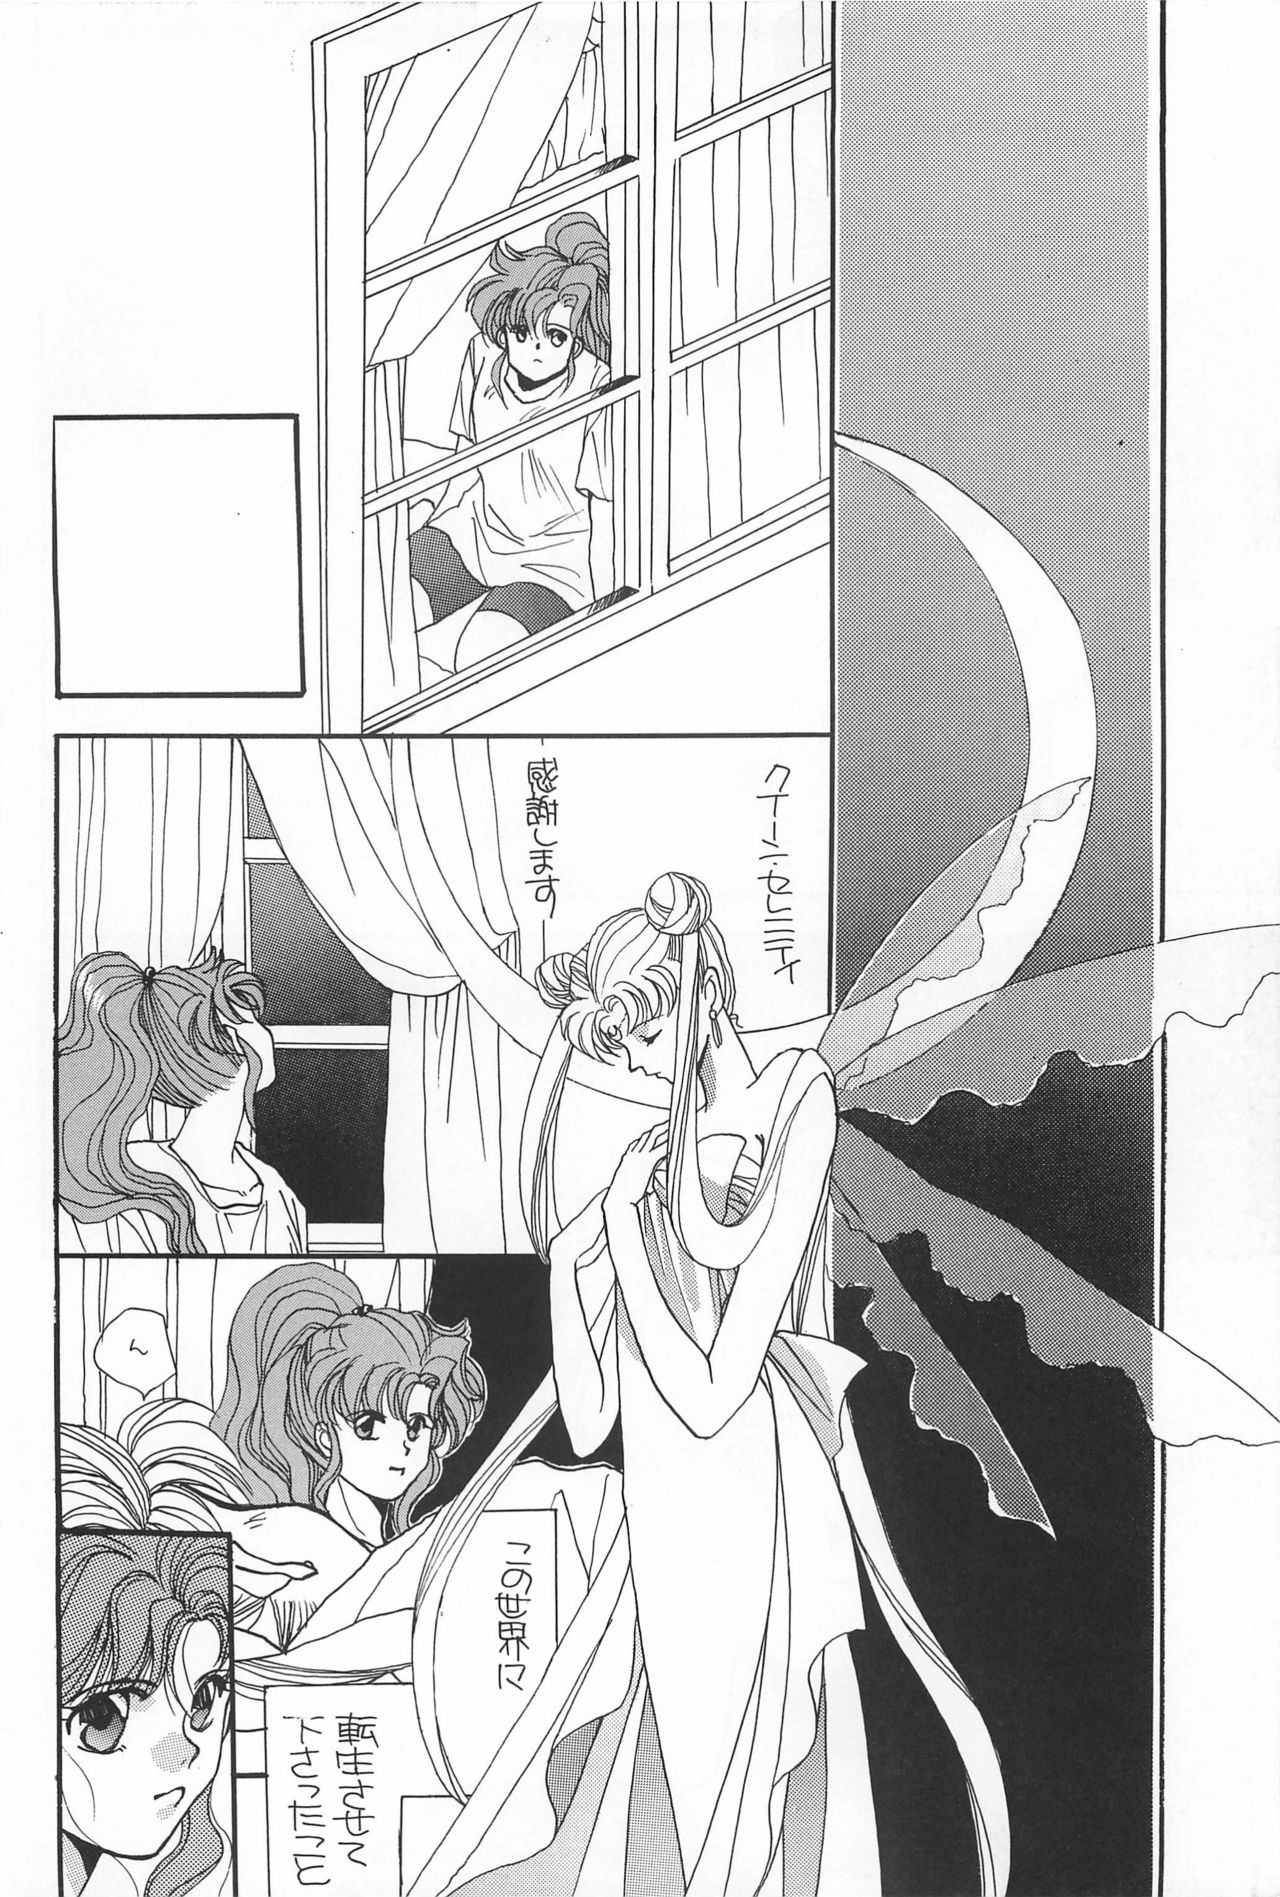 [Hello World (Muttri Moony)] Kaze no You ni Yume no You ni - Sailor Moon Collection (Sailor Moon) 163